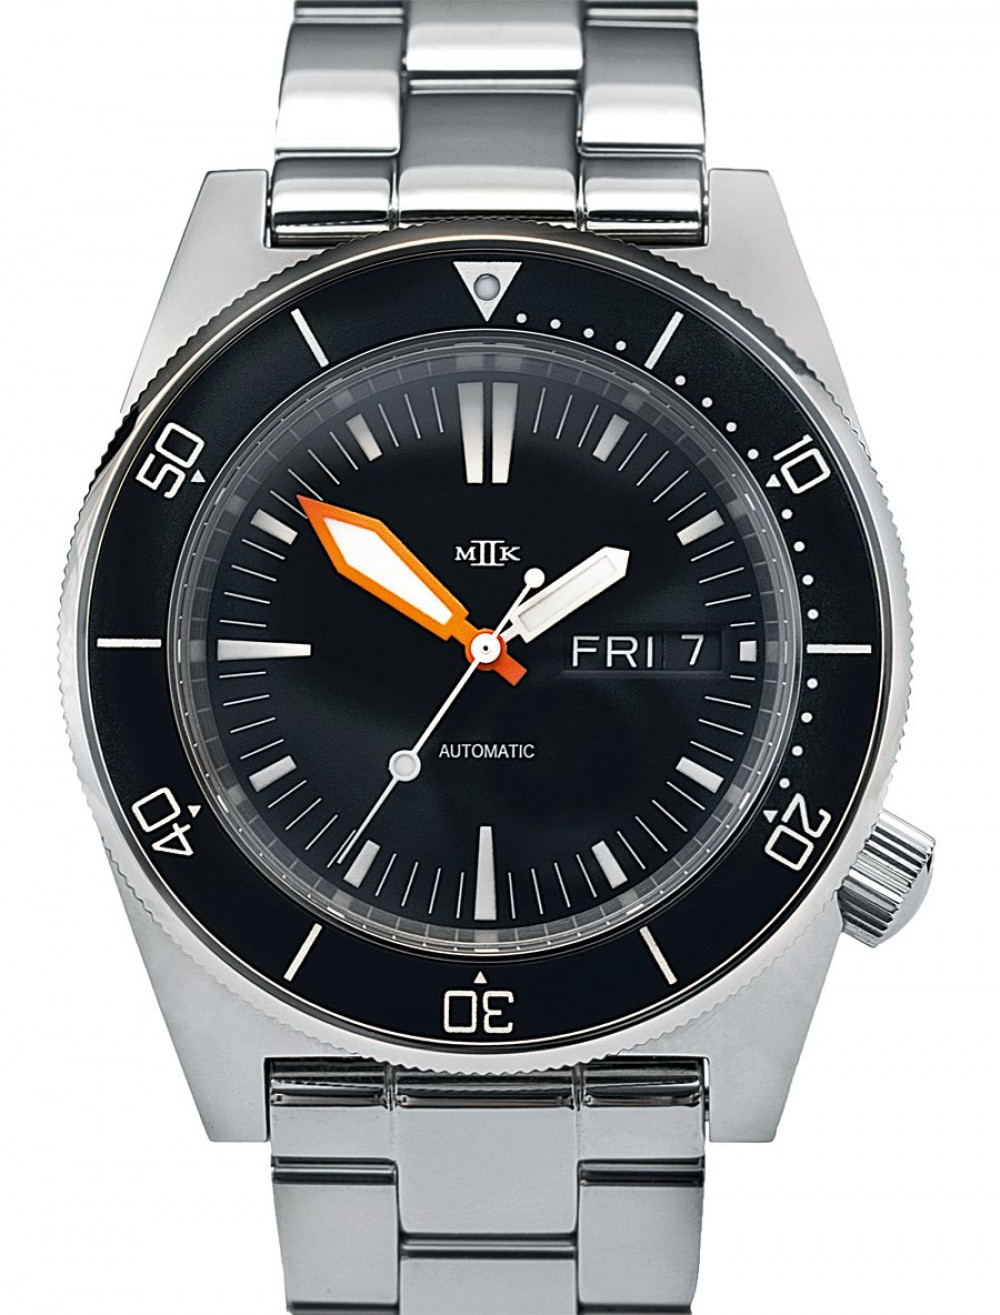 Zegarek firmy MKII, model Seafighter